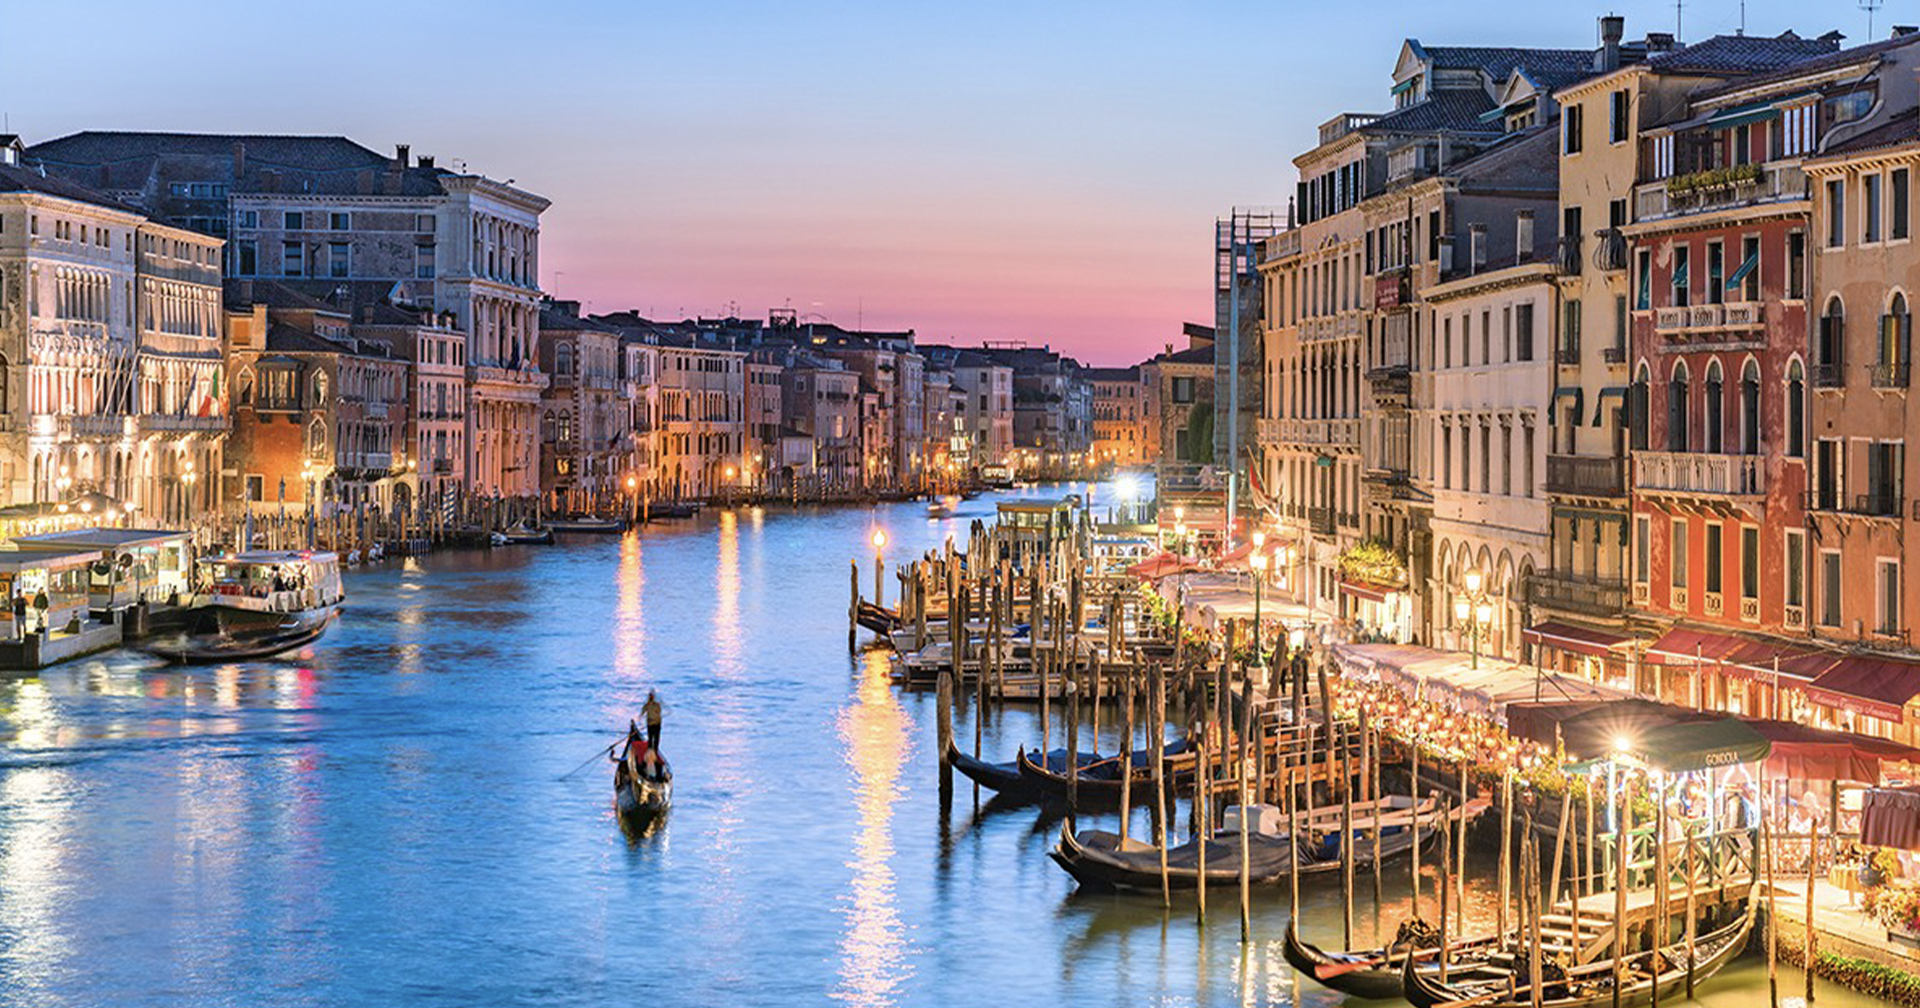 นักท่องเที่ยวต้องจ่ายค่าเข้าเมือง ‘เวนิส’ ตั้งแต่ปี 2022